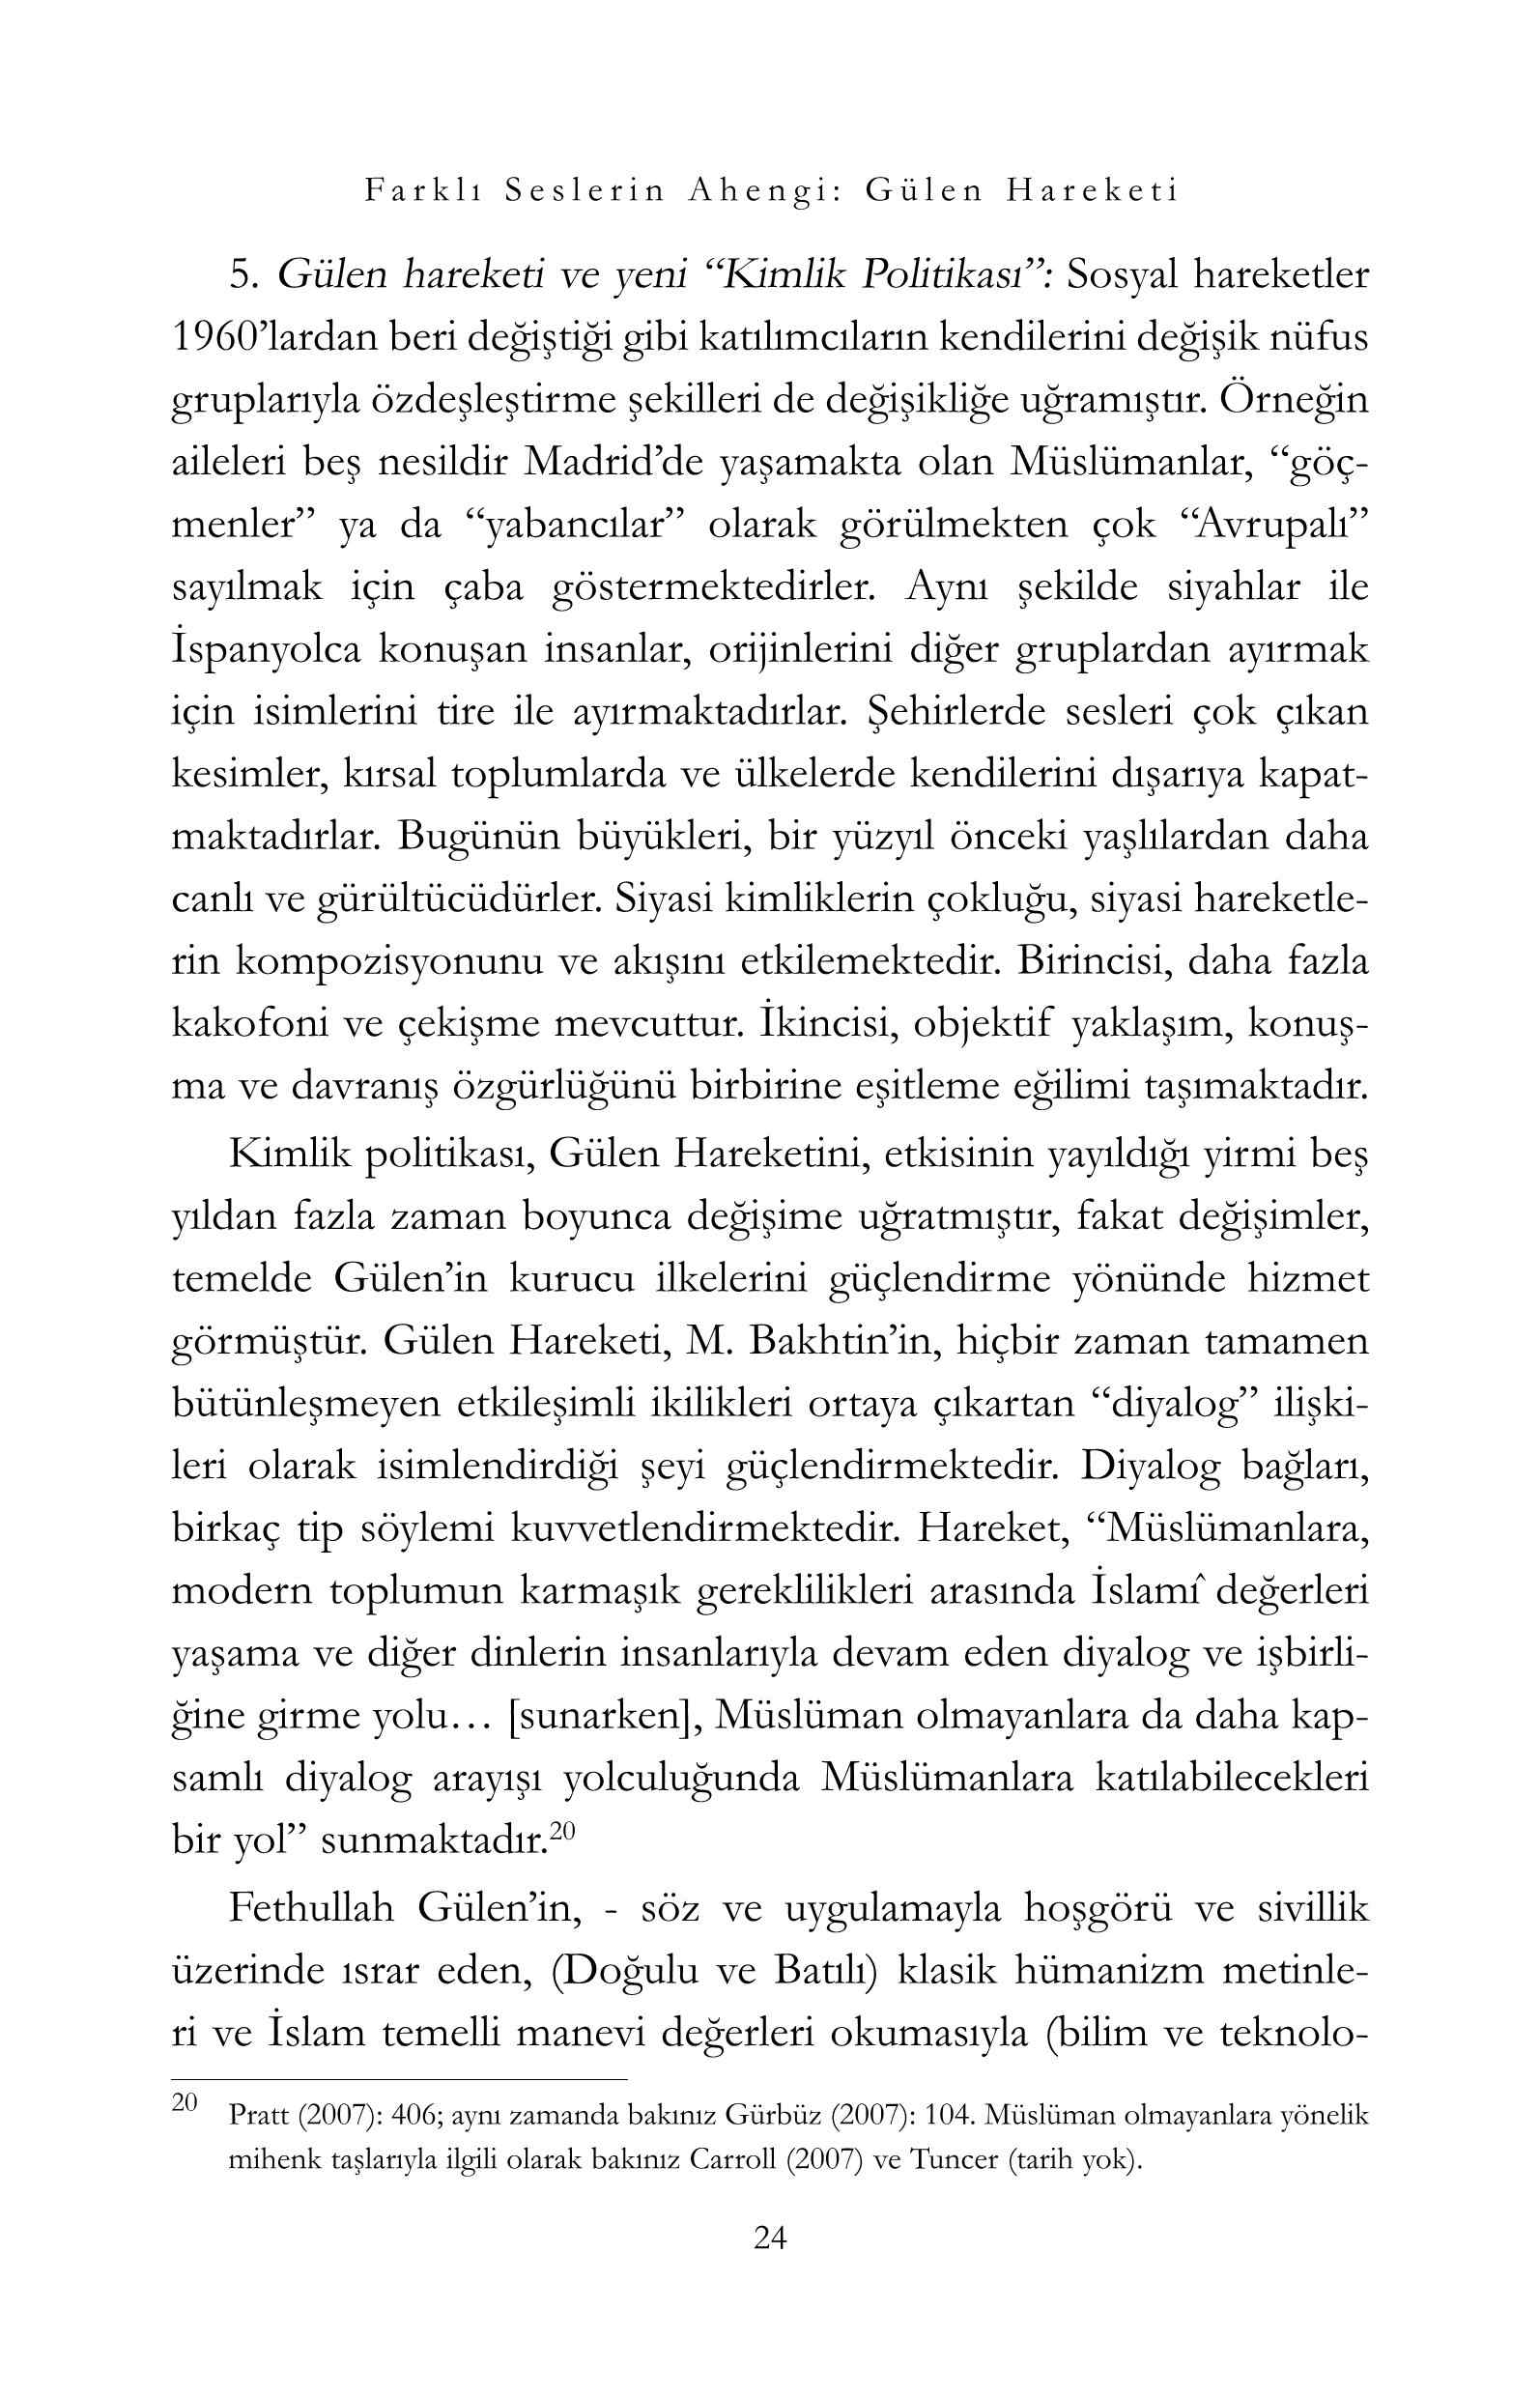 Gulen Hareketi-1 - Farklı Seslerin Ahengi - M F Gulen.pdf, 256-Sayfa 